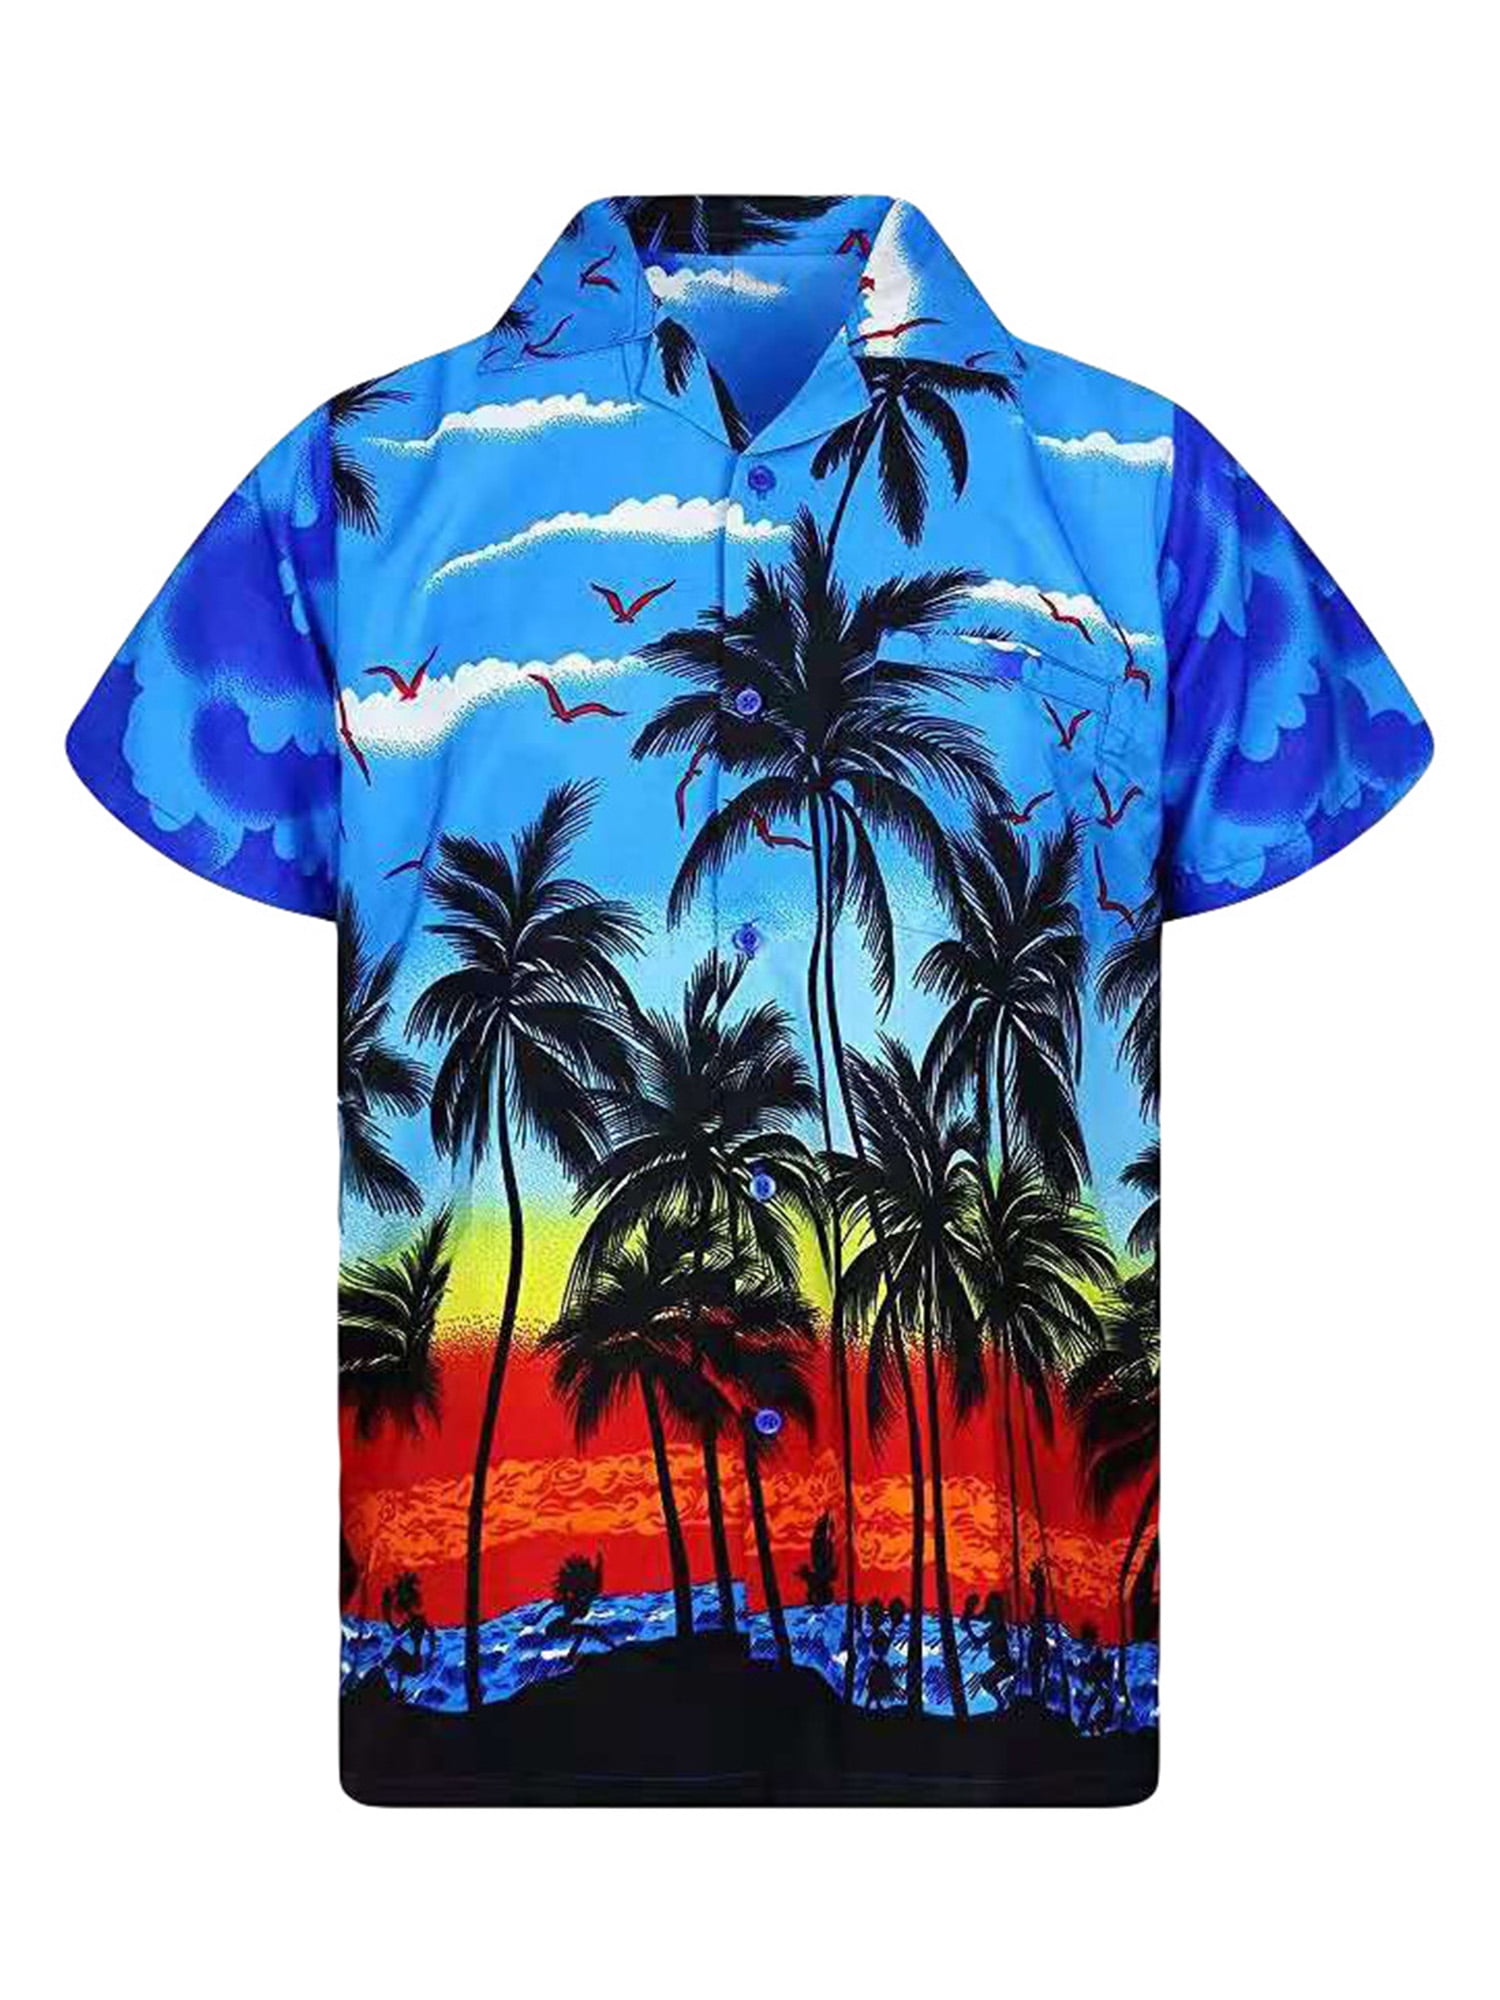 Men Women Hawaiian Shirts Short Sleeve Beach Top Fancy Dress Summer Holiday 